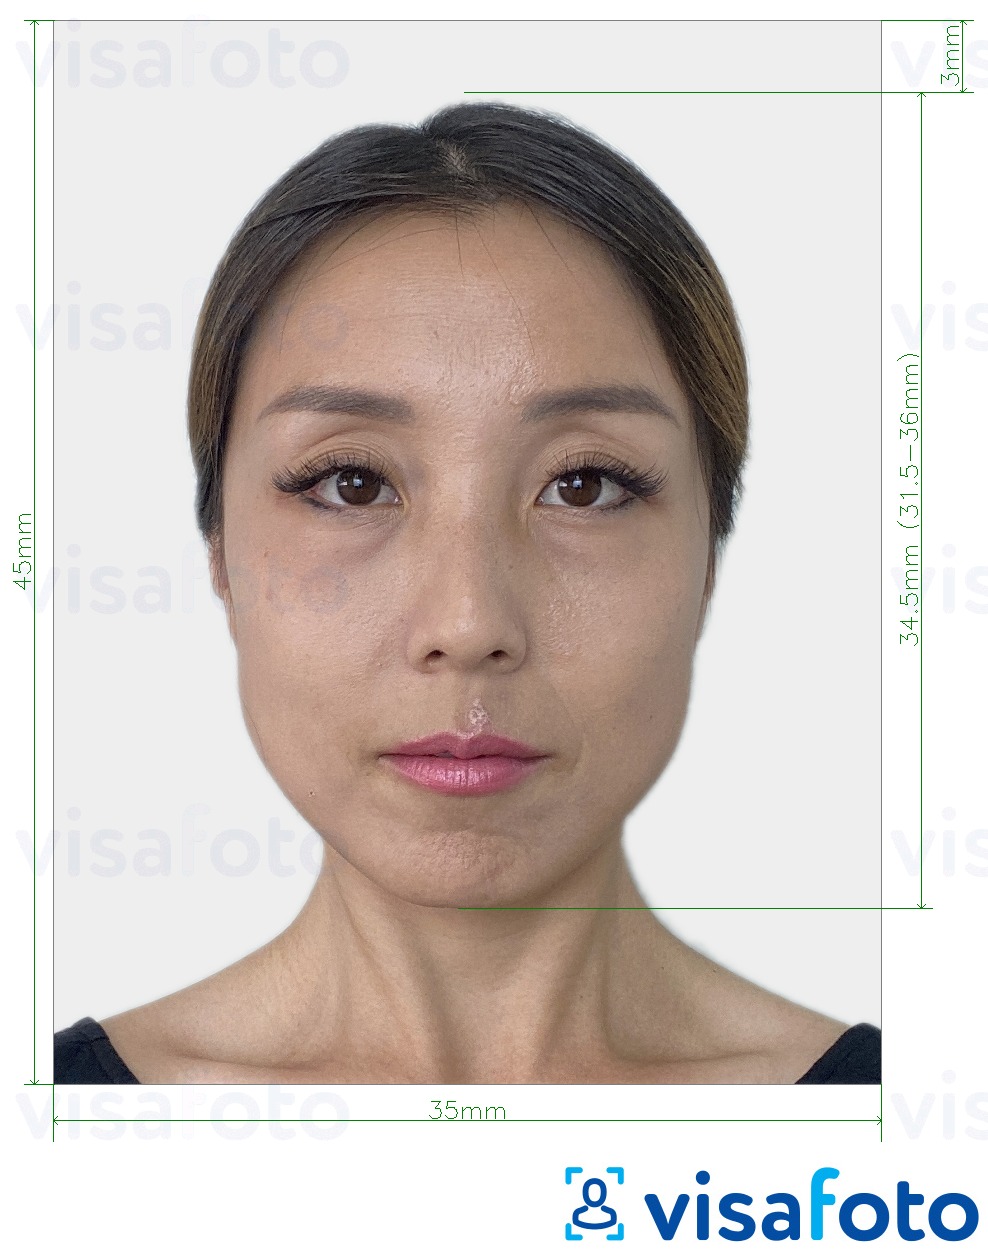 Exemples sur des photos pour Corée du Sud Visa 35x45 mm (3.5x4.5 cm) avec les spécifications de taille exactes